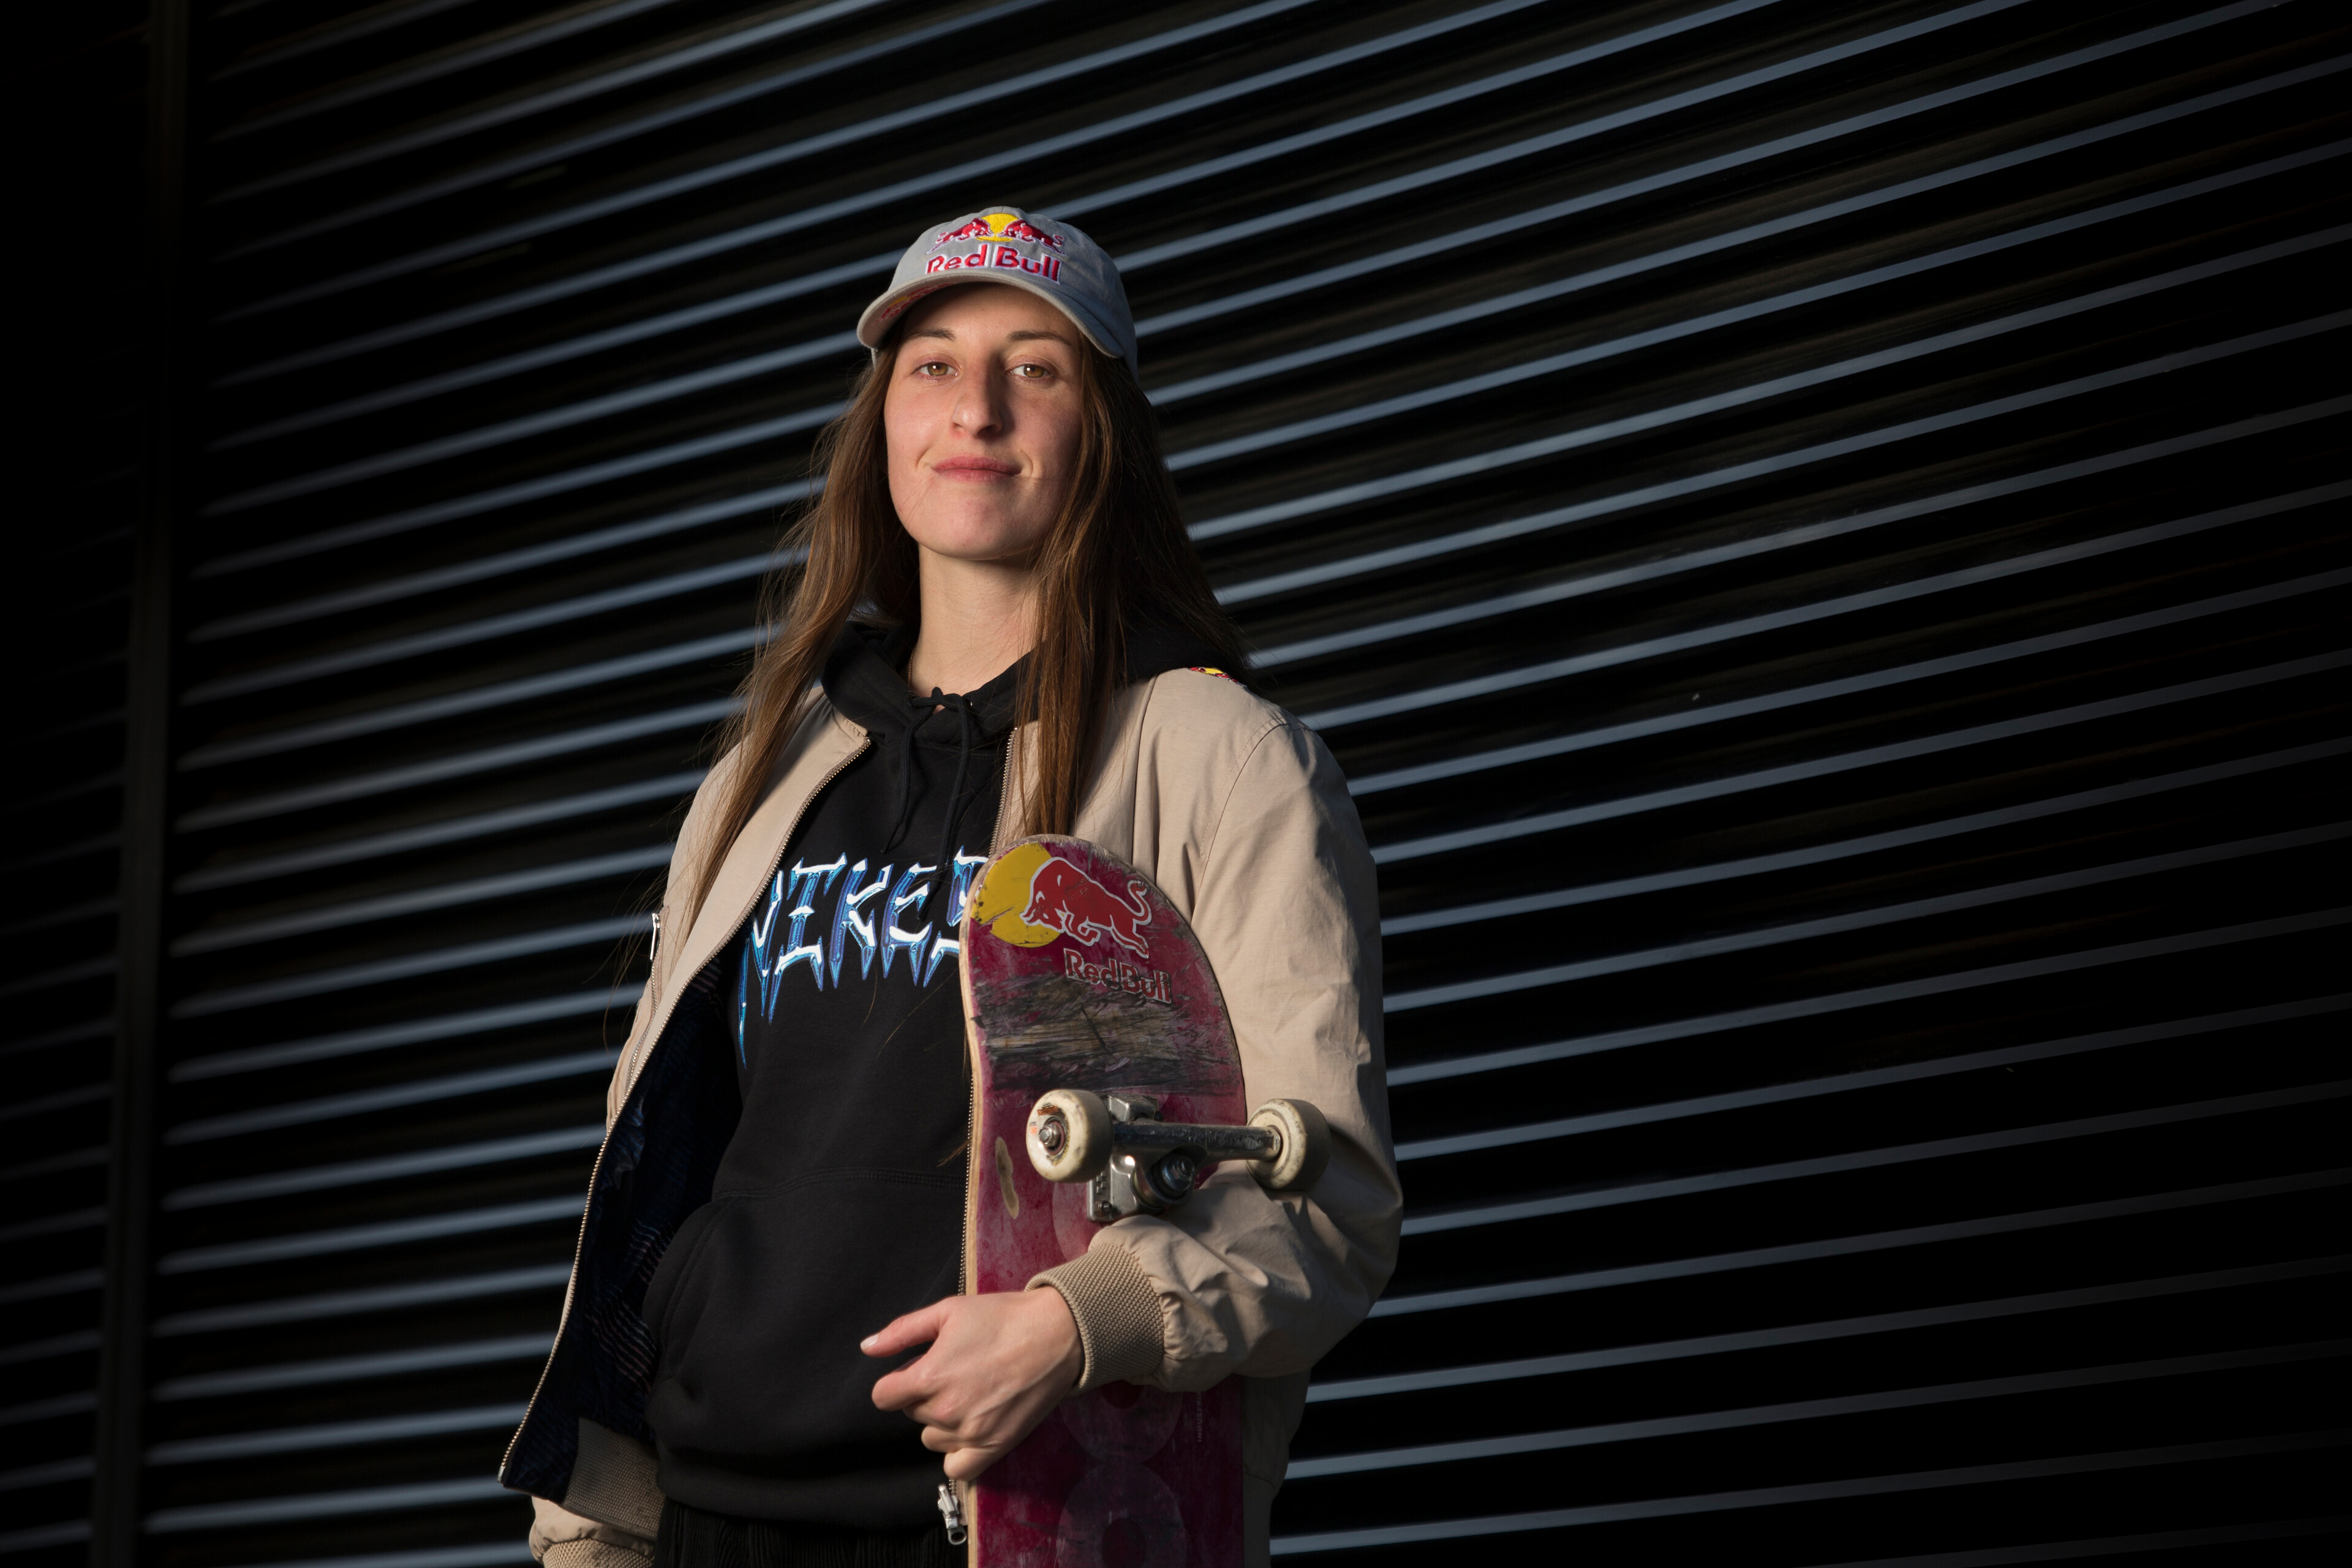 De modelar junto a Delfina Pignatiello y recorrer el mundo con su patineta al sueño olímpico de París: las aventuras de la skater Aldana Bertrán